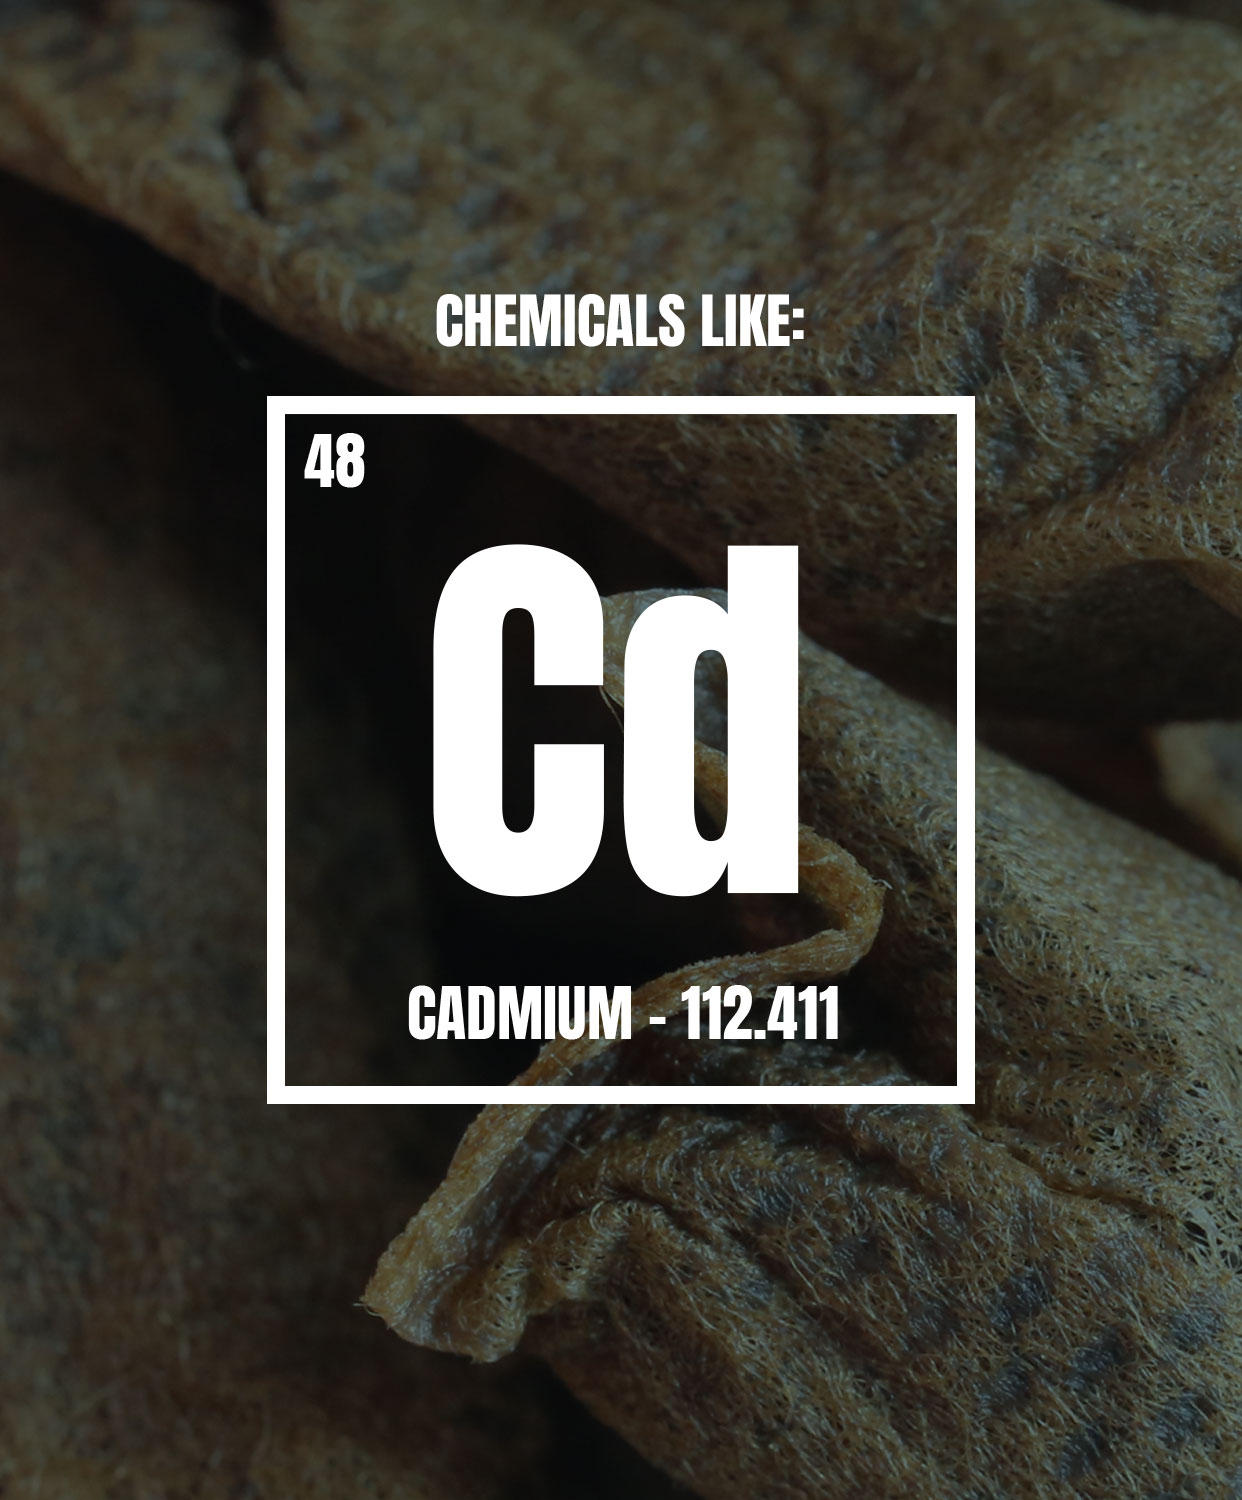 Chemicals like cadmium